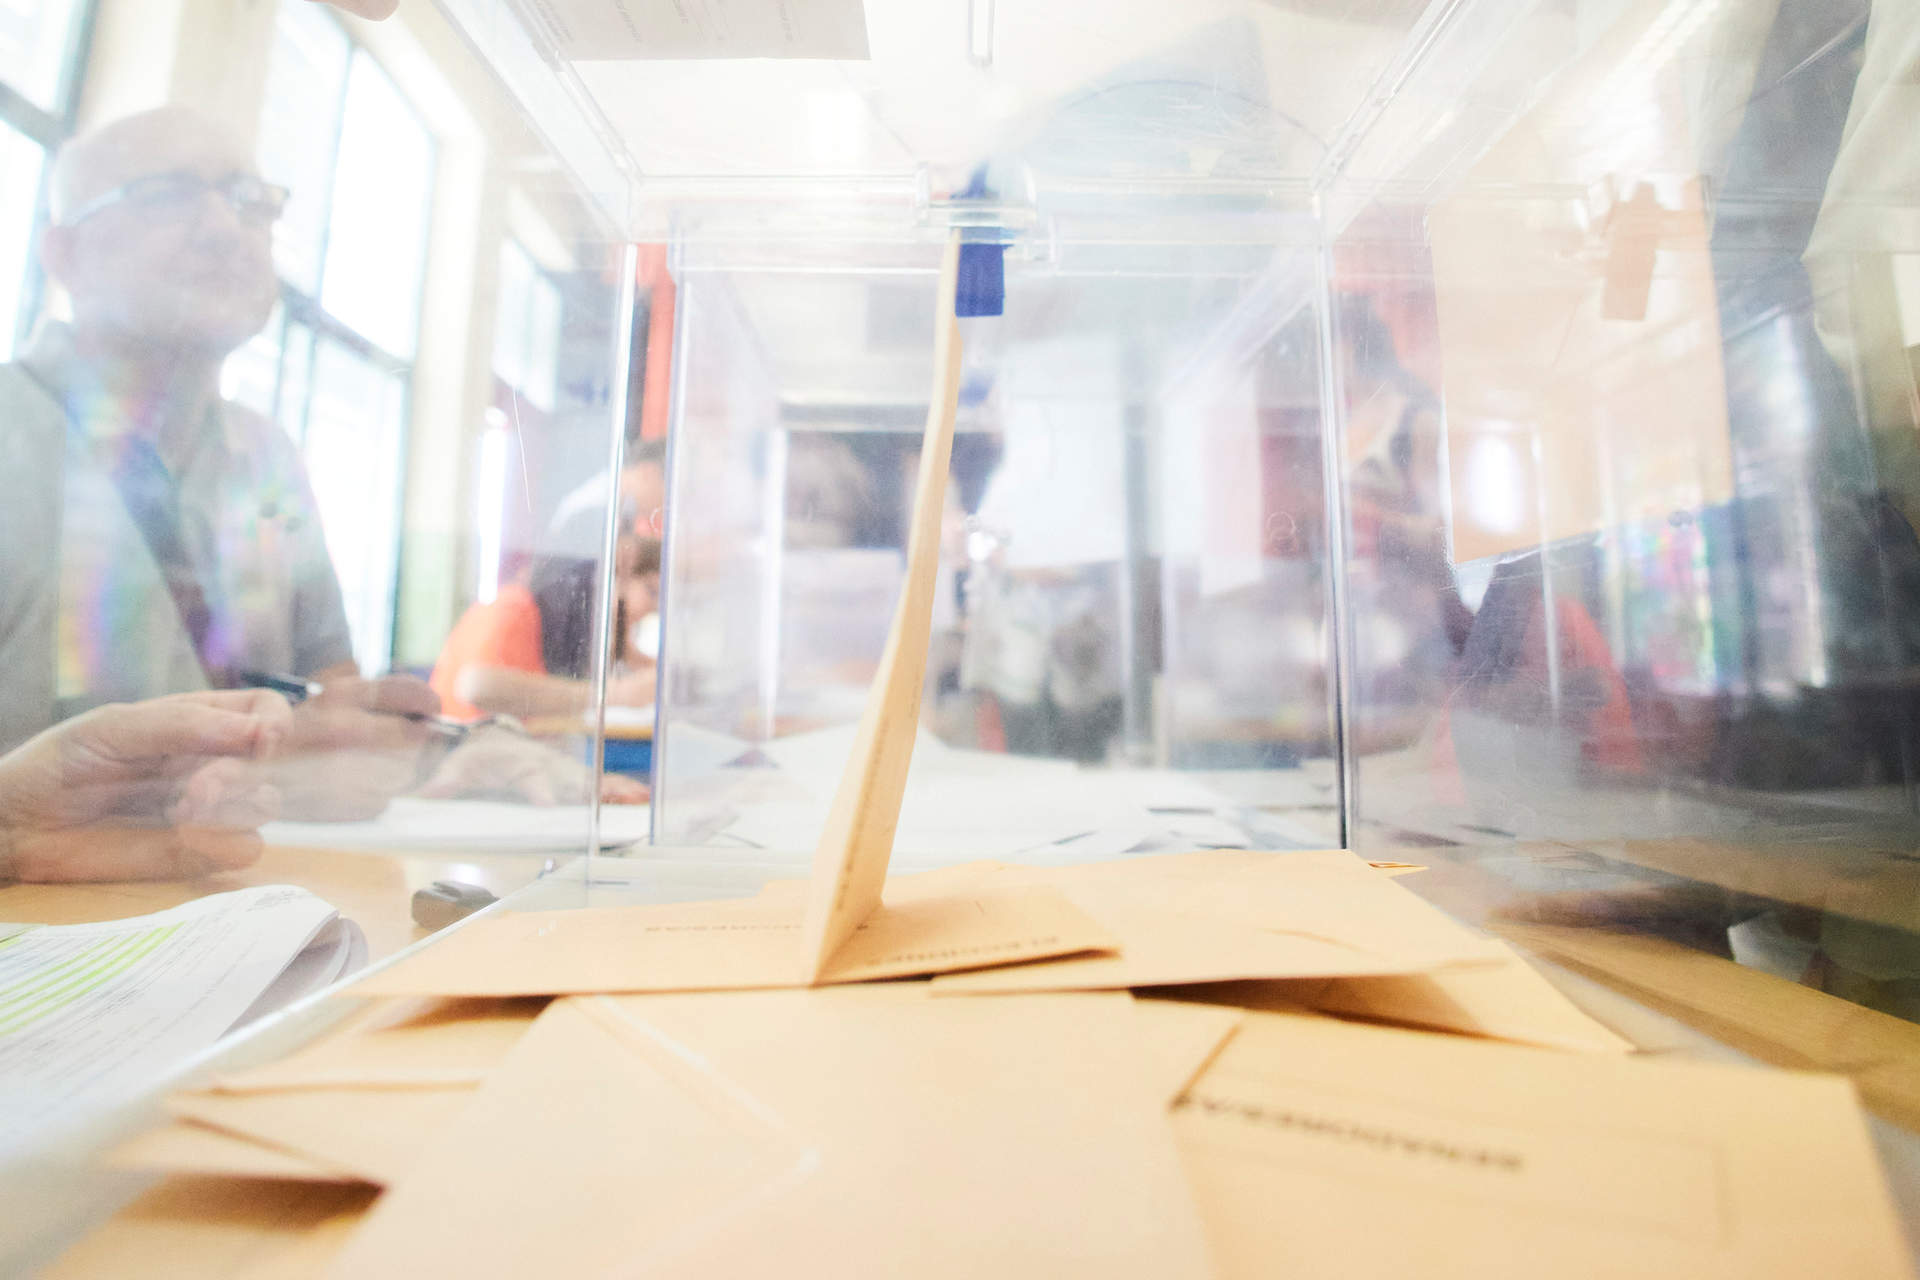 Vox propone reformar la ley electoral para que los votos por correo se cuenten por separado y evitar posibles fraudes